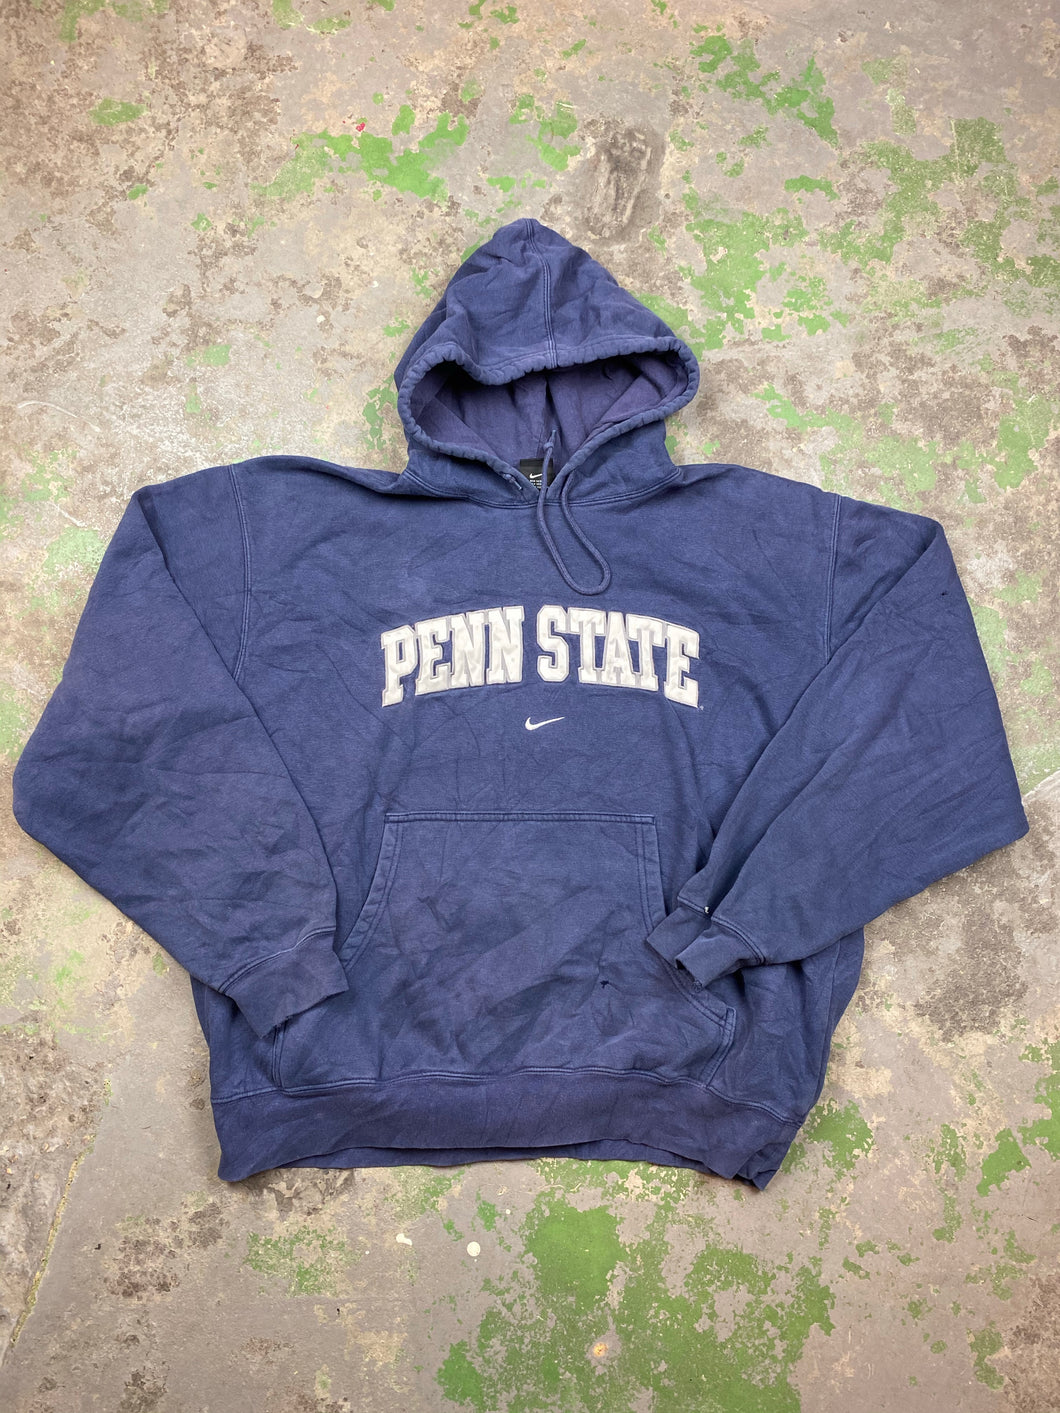 Penn State hoodie